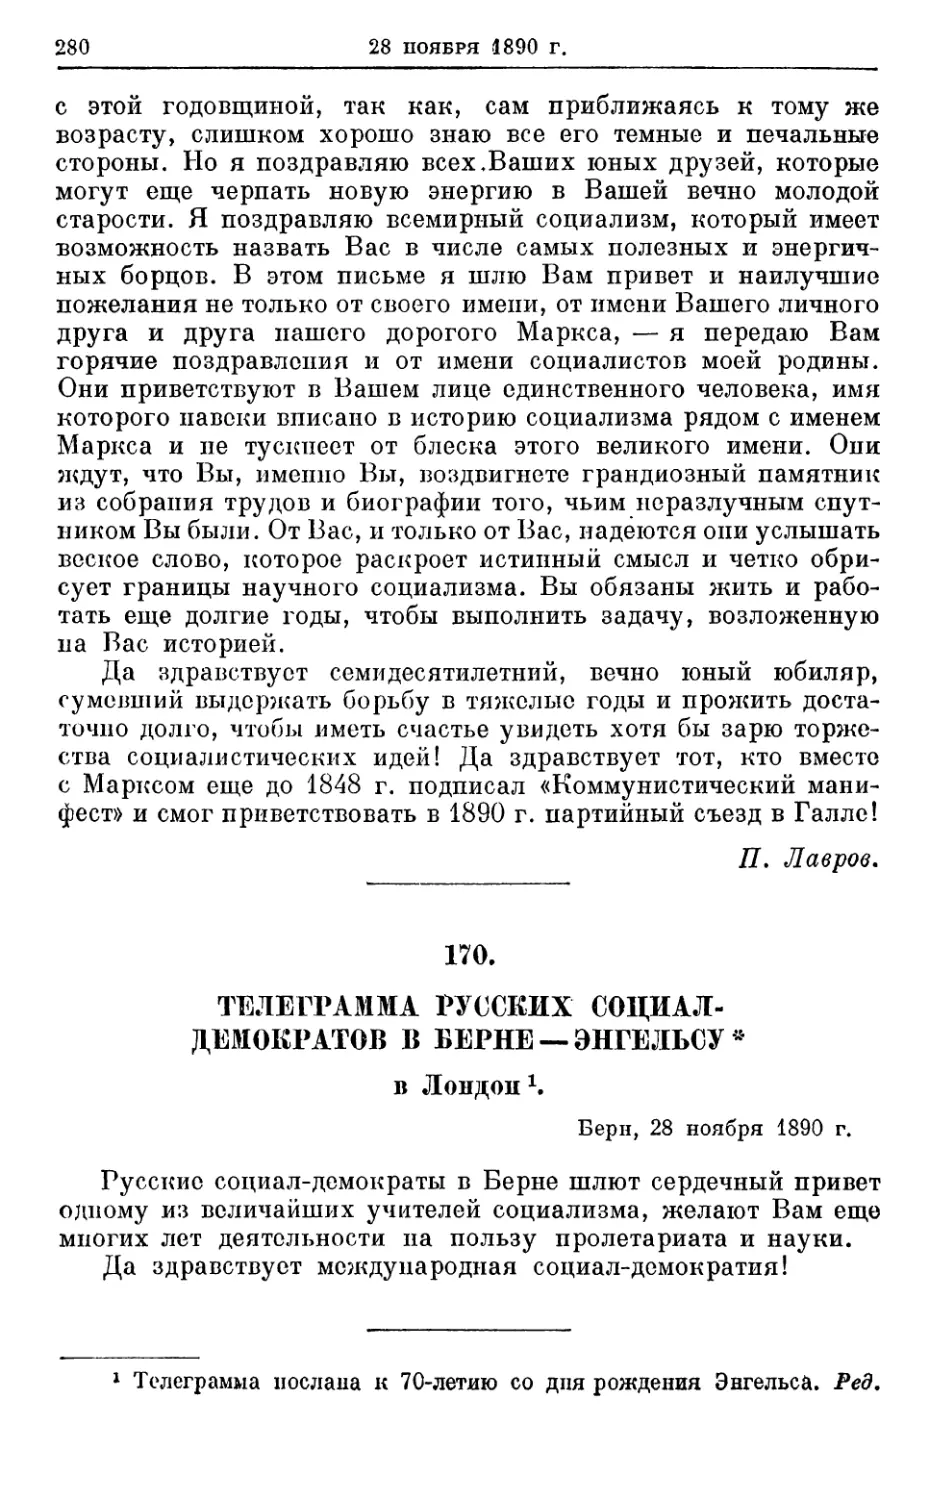 170. Телеграмма русских социал-демократов в Берне — Энгельсу *, 28 ноября 1890г